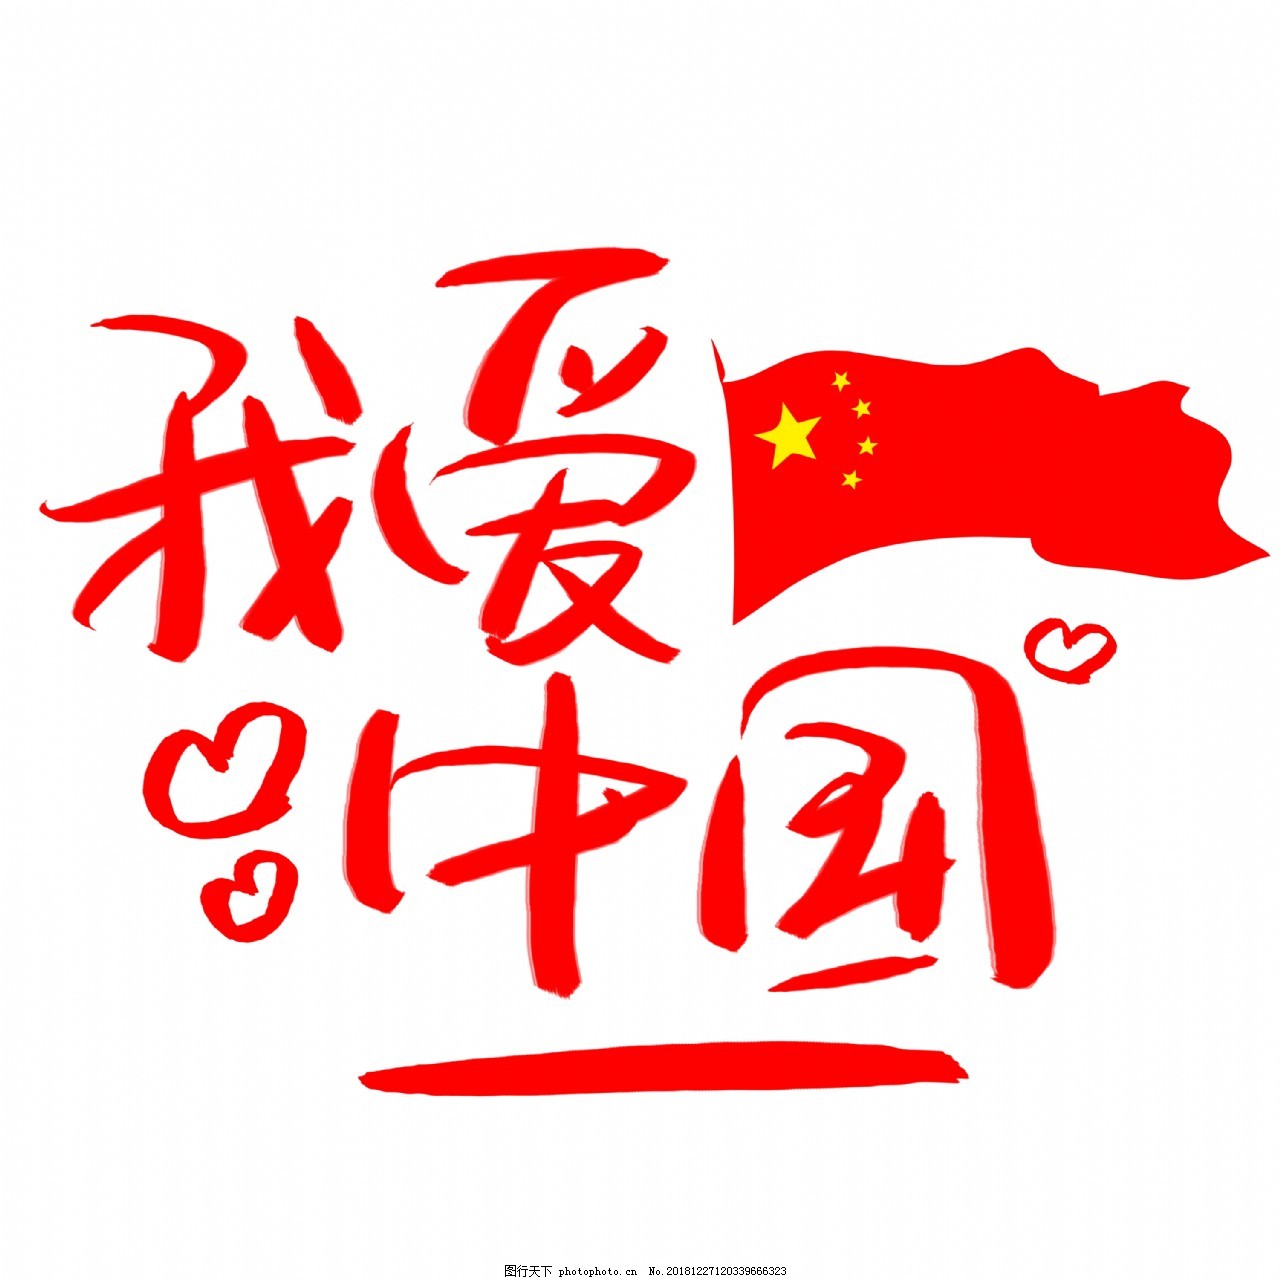 我爱中国手写手绘书法艺术字